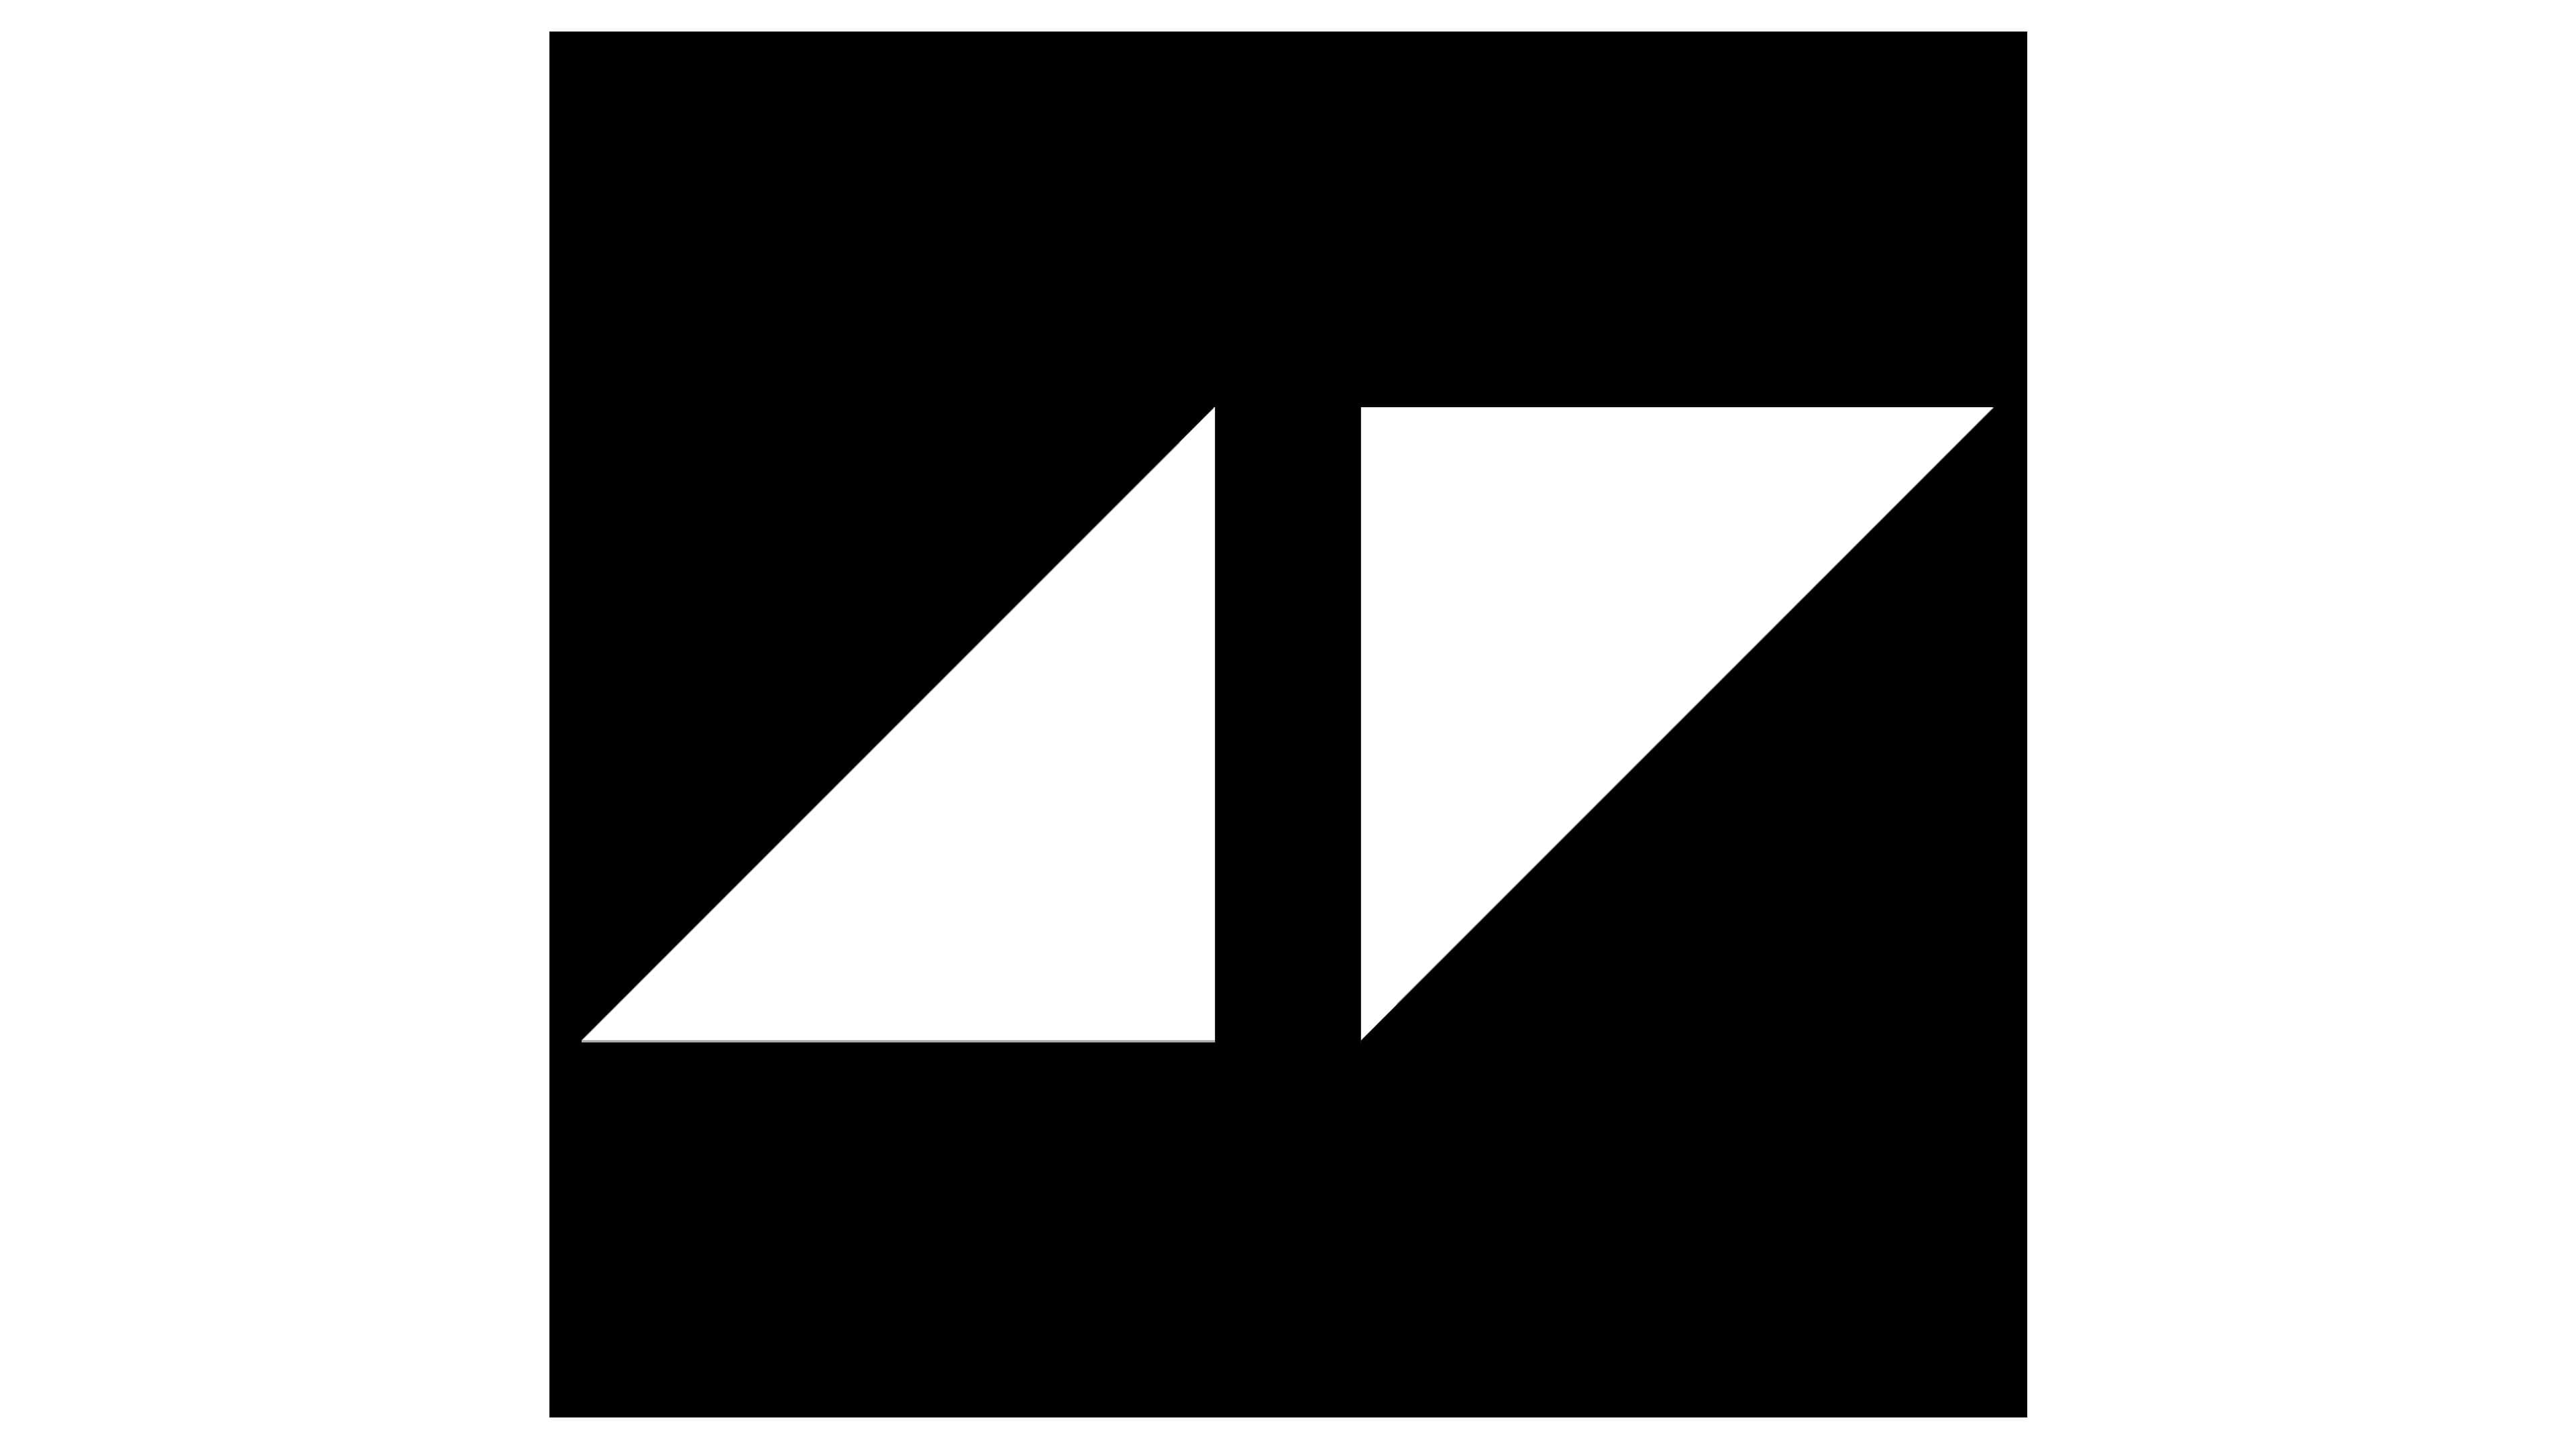 Avicii Logo y símbolo, significado, historia, PNG, marca